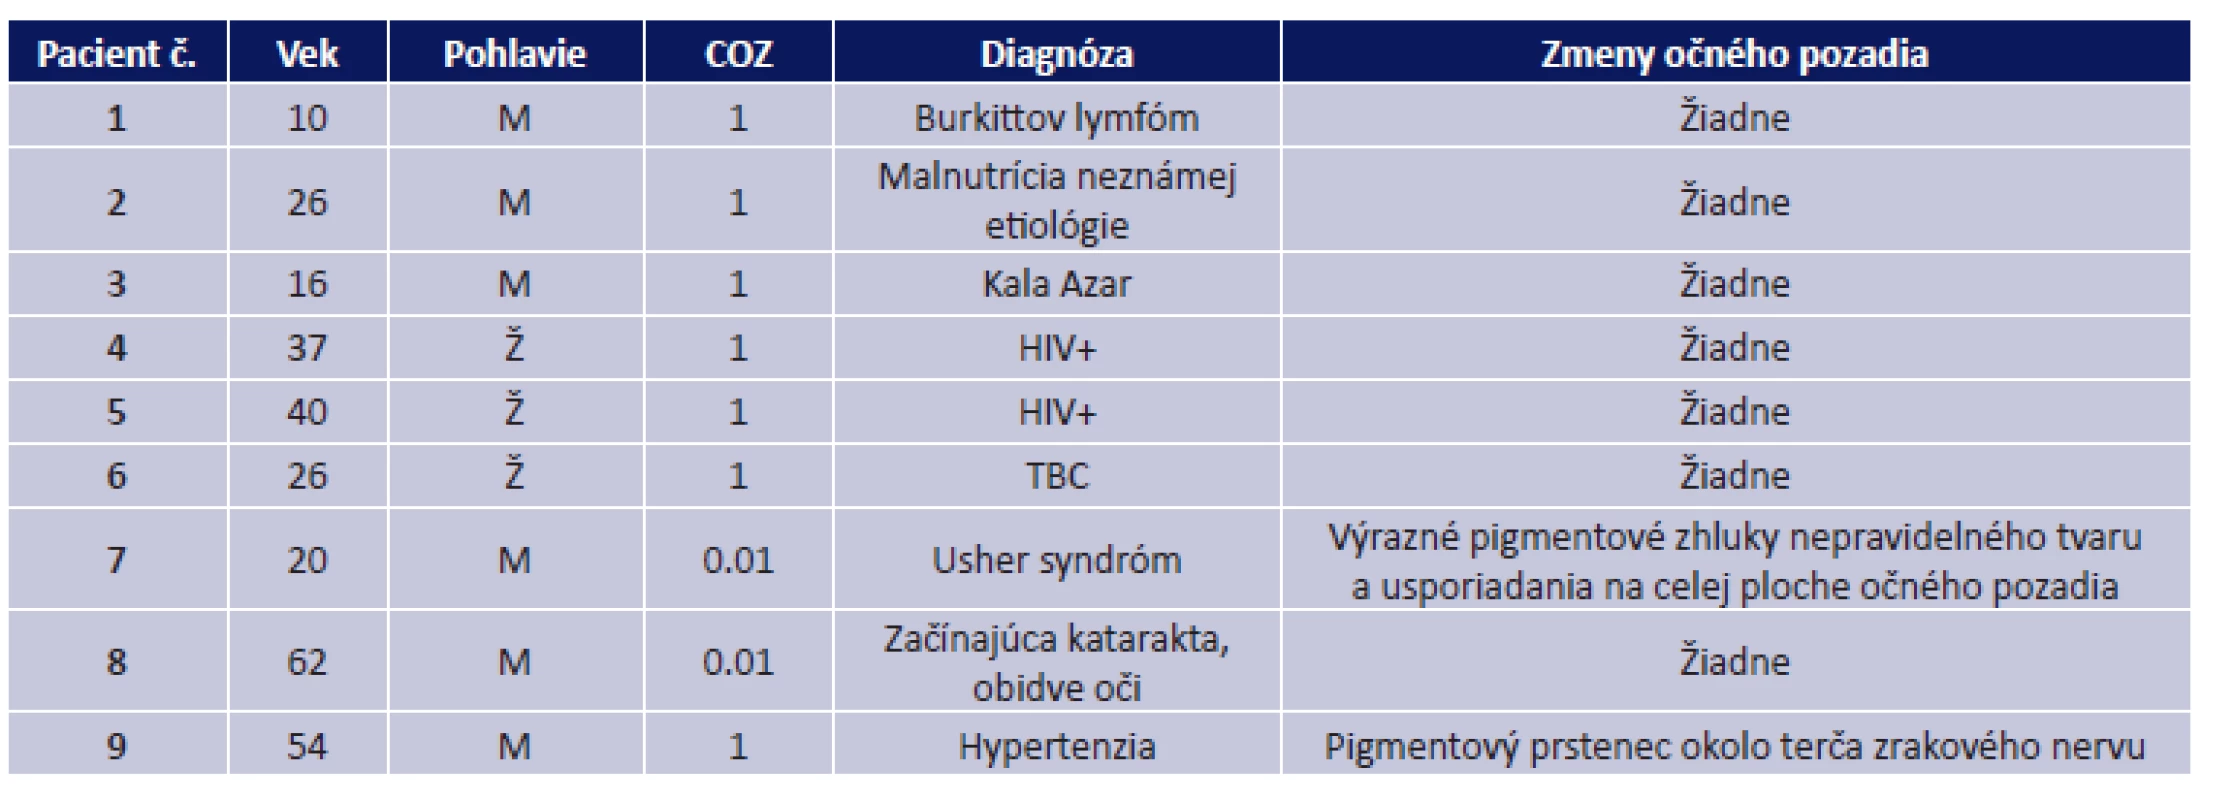 Prehľad vyšetrených pacientov s porovnaním COZ, diagnózy, na základe ktorej bol pacient hospitalizovaný a popisom nálezu na očnom pozadí (HIV – Human Immunodeficiency Virus, TBC – tuberkulóza)